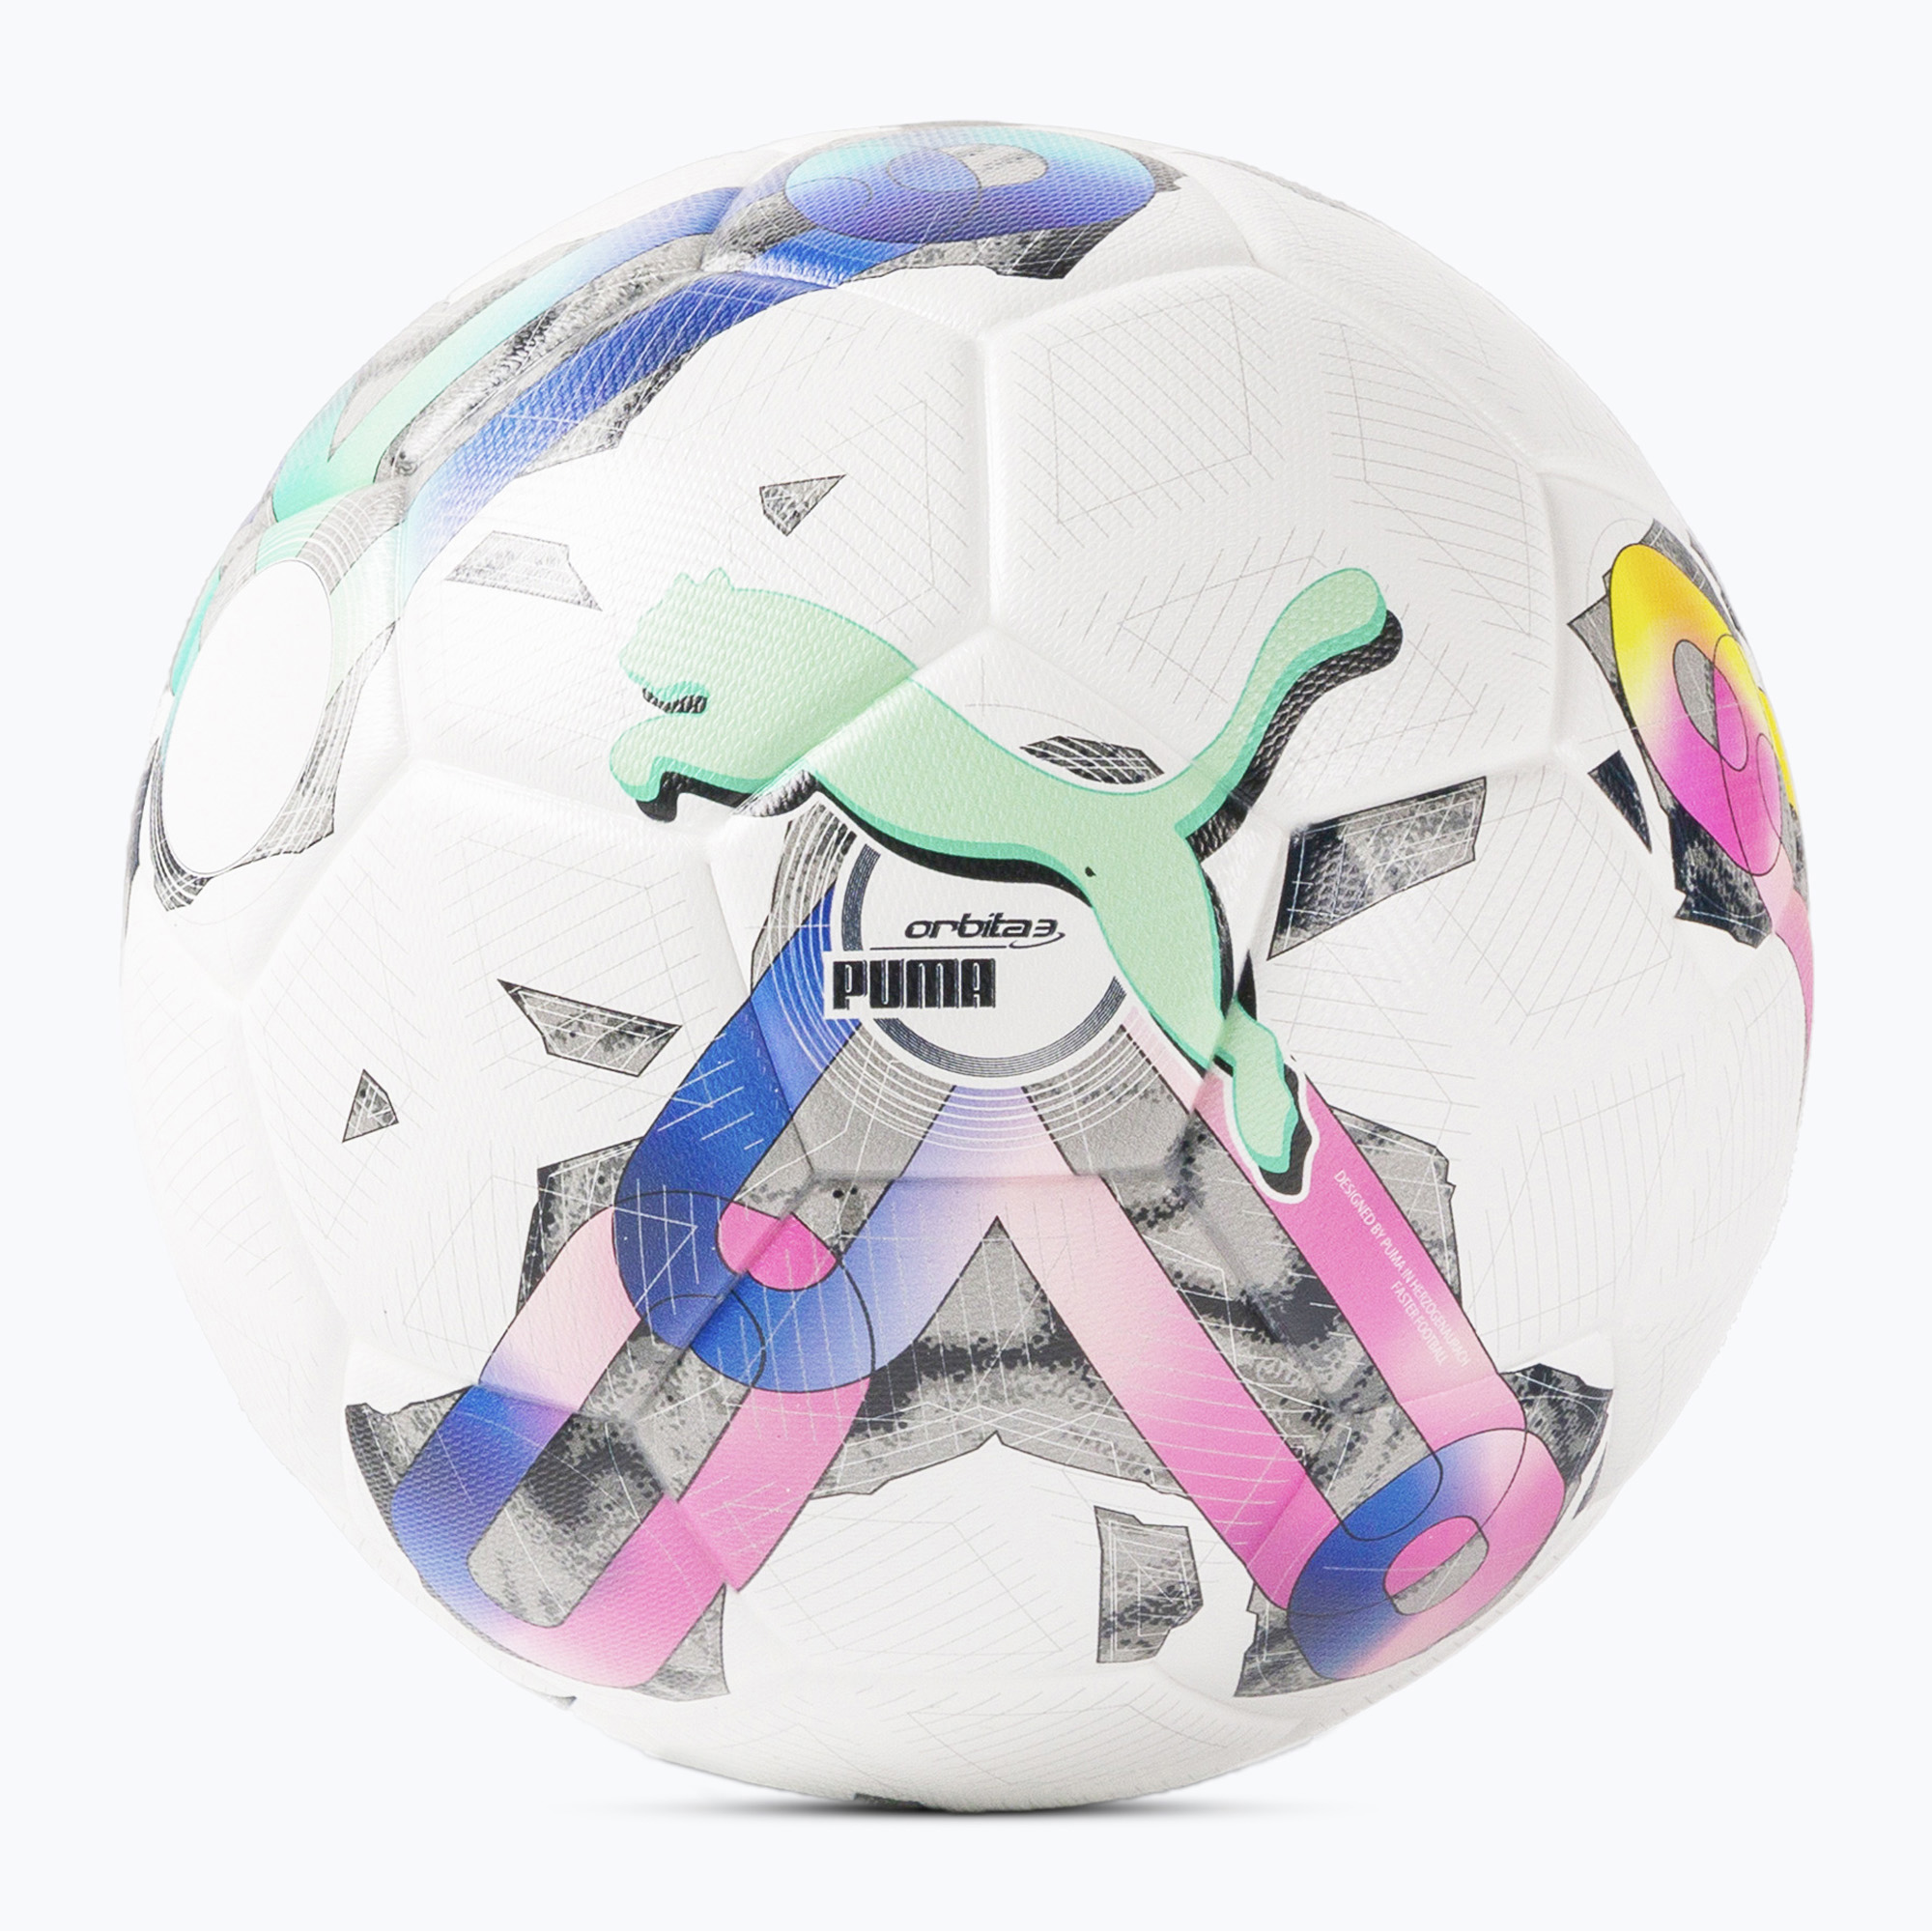 Футболна топка Puma Orbit 3 Tb (Fifa Quality) бяла и цветна 08377701